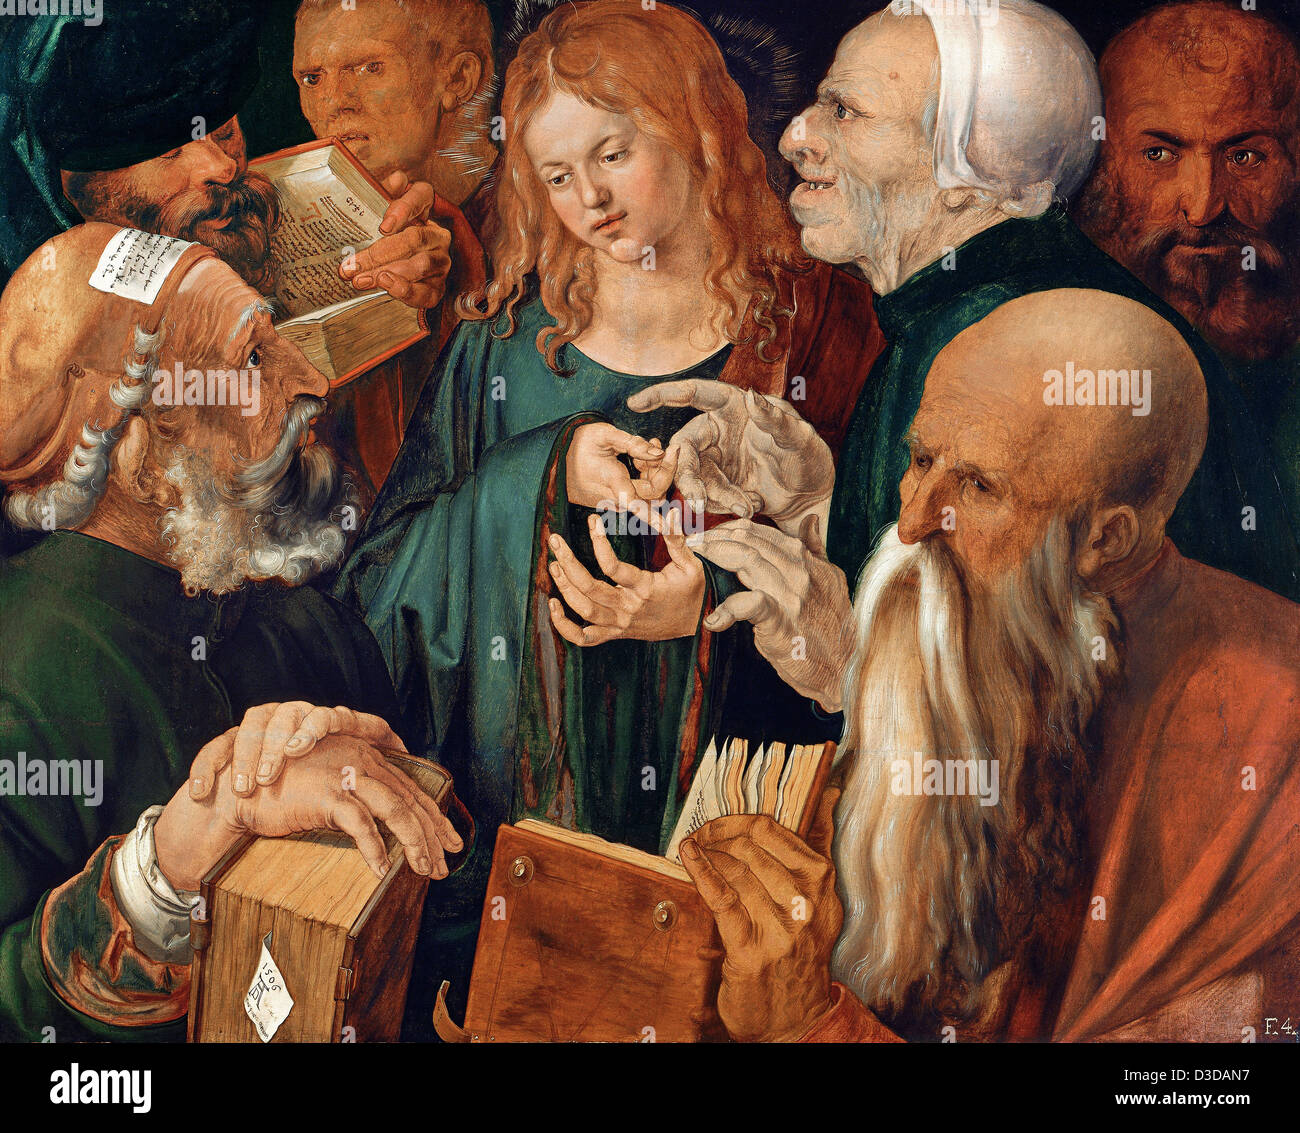 Albrecht durer, le Christ parmi les docteurs 1506 Huile sur panneau. Musée Thyssen-Bornemisza, Madrid Banque D'Images